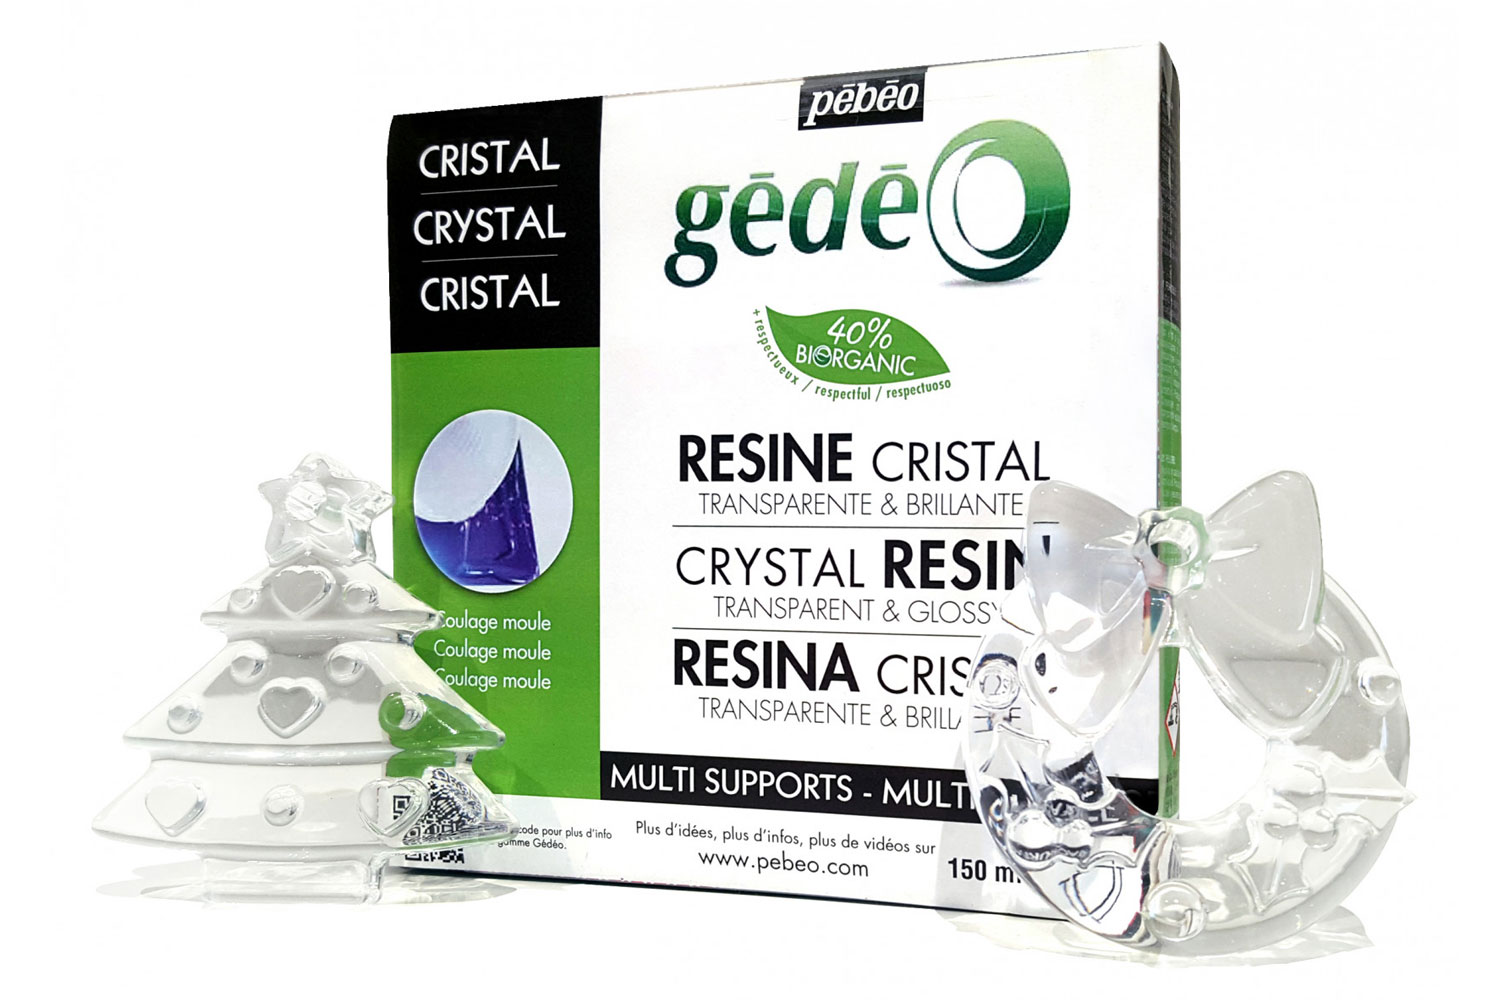 Kit Résine cristal BIO - Résine - 10 Doigts